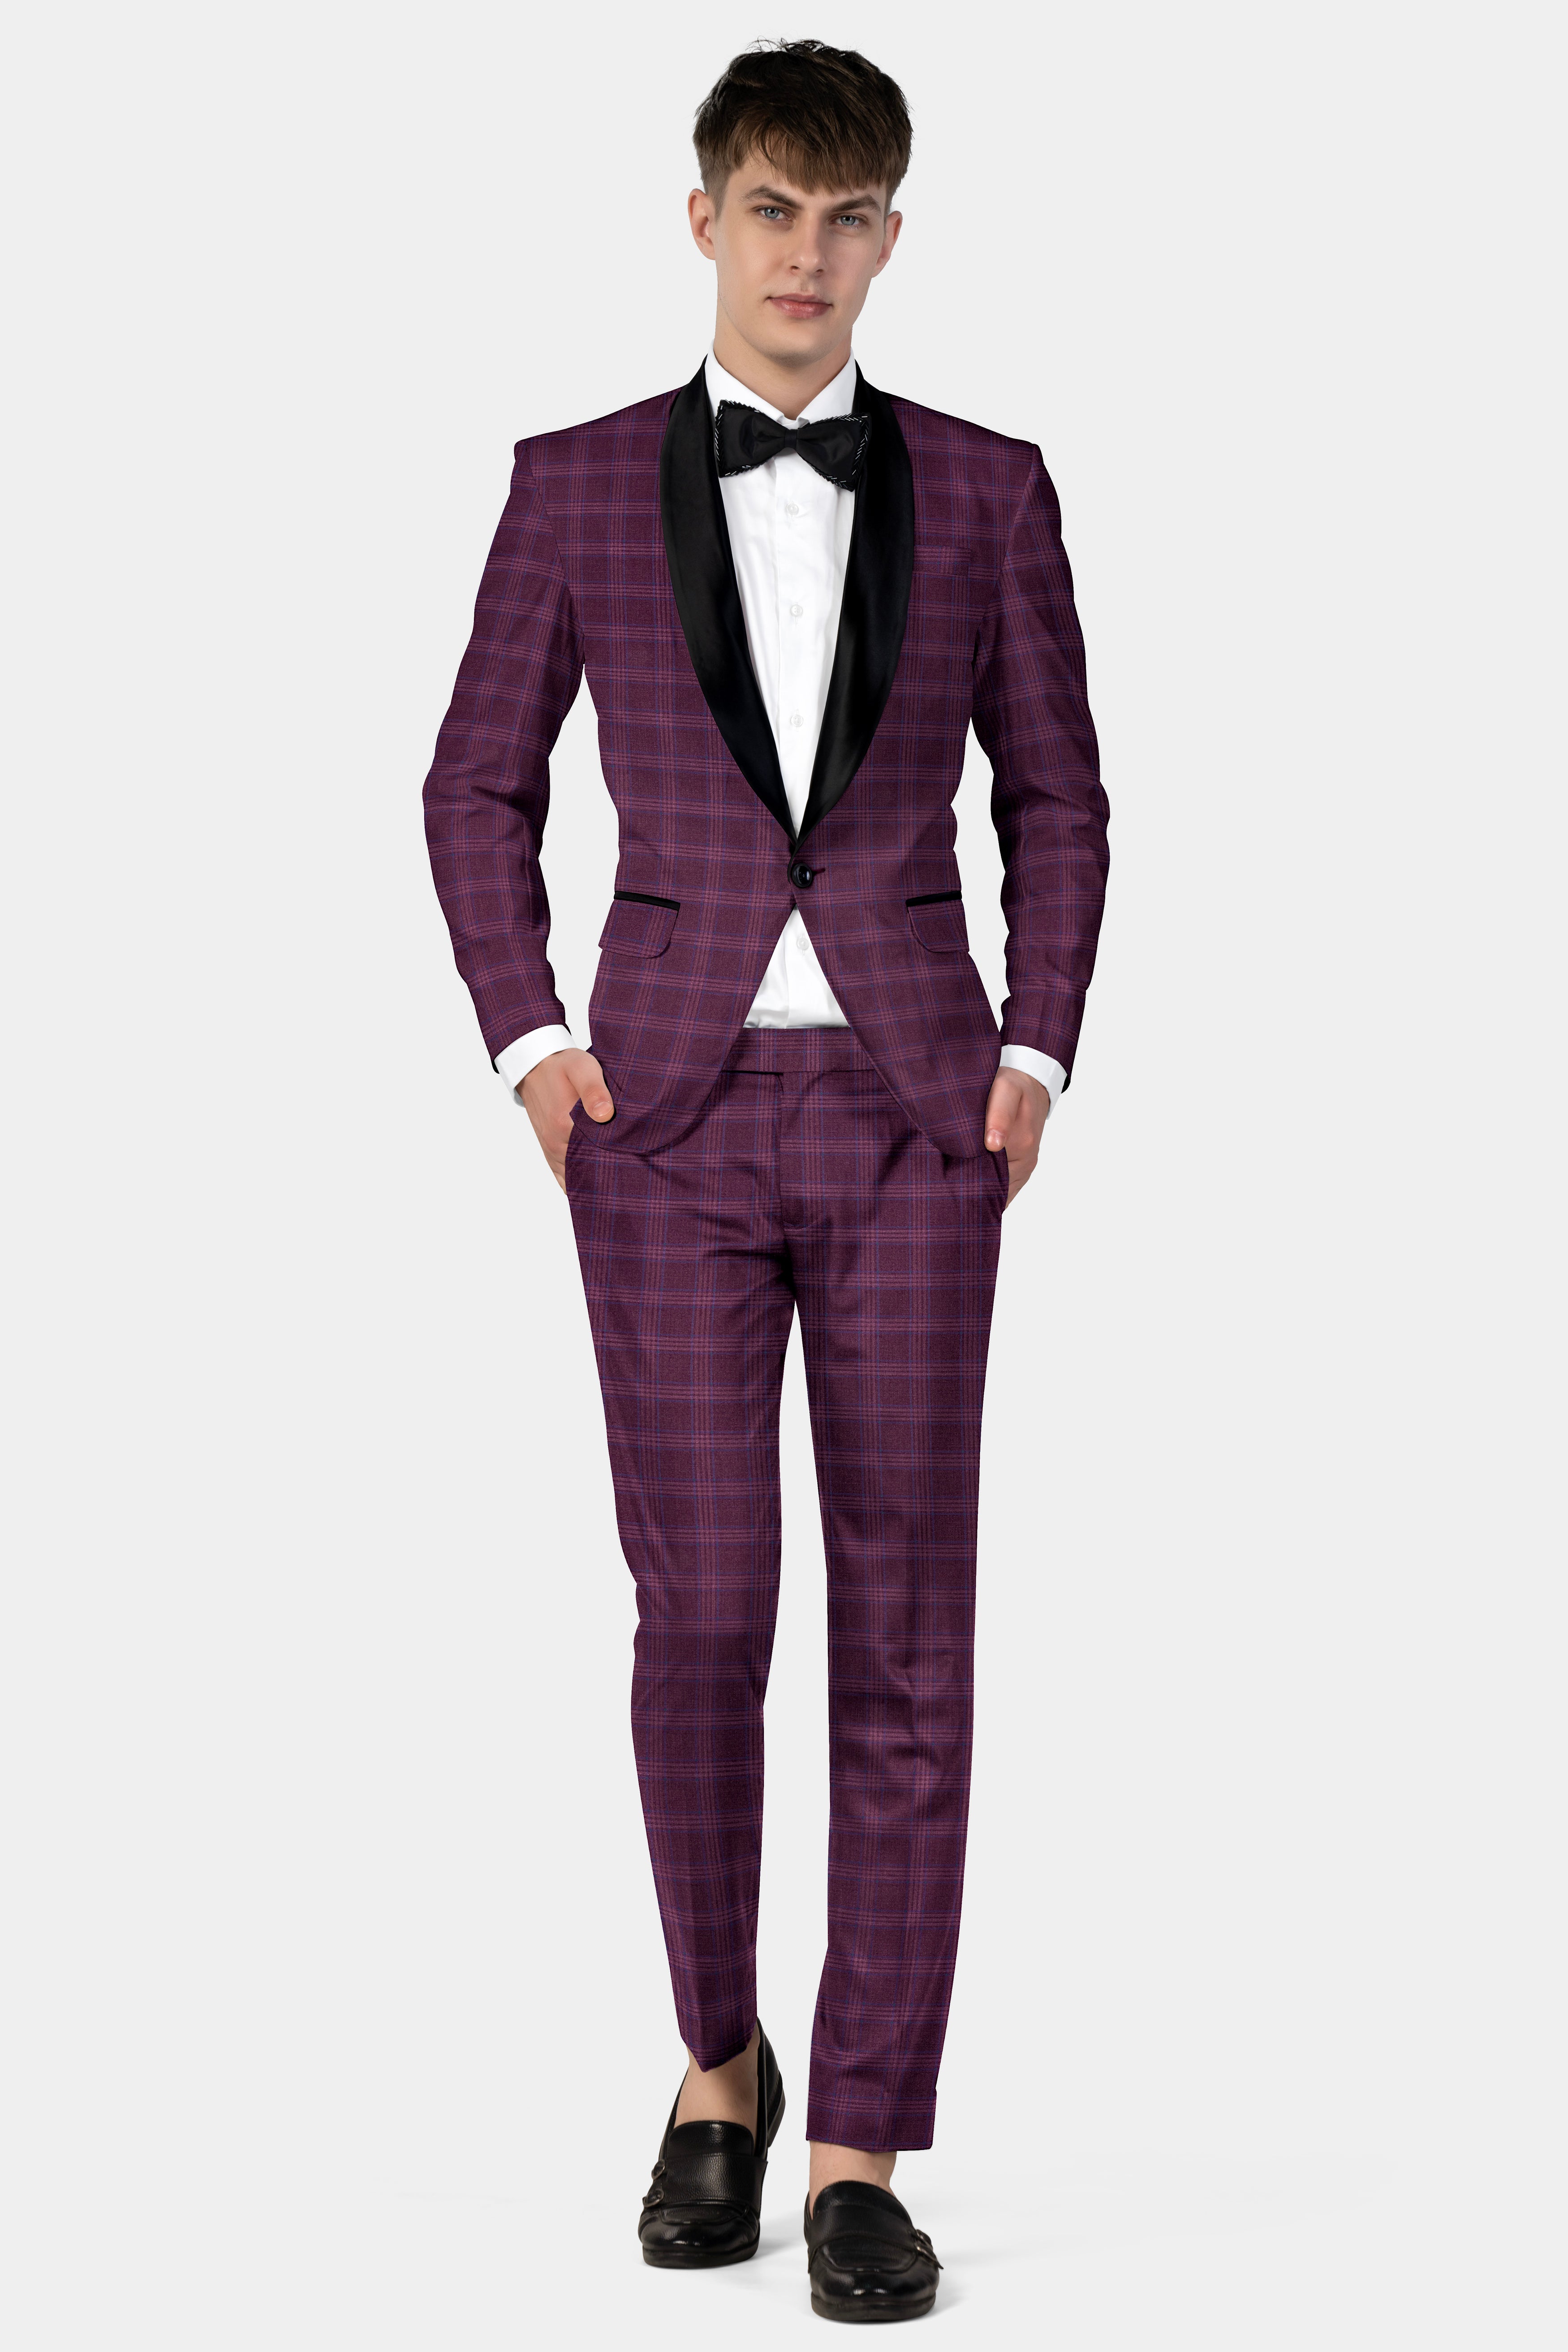 Eclipse Wine Plaid Tuxedo Suit